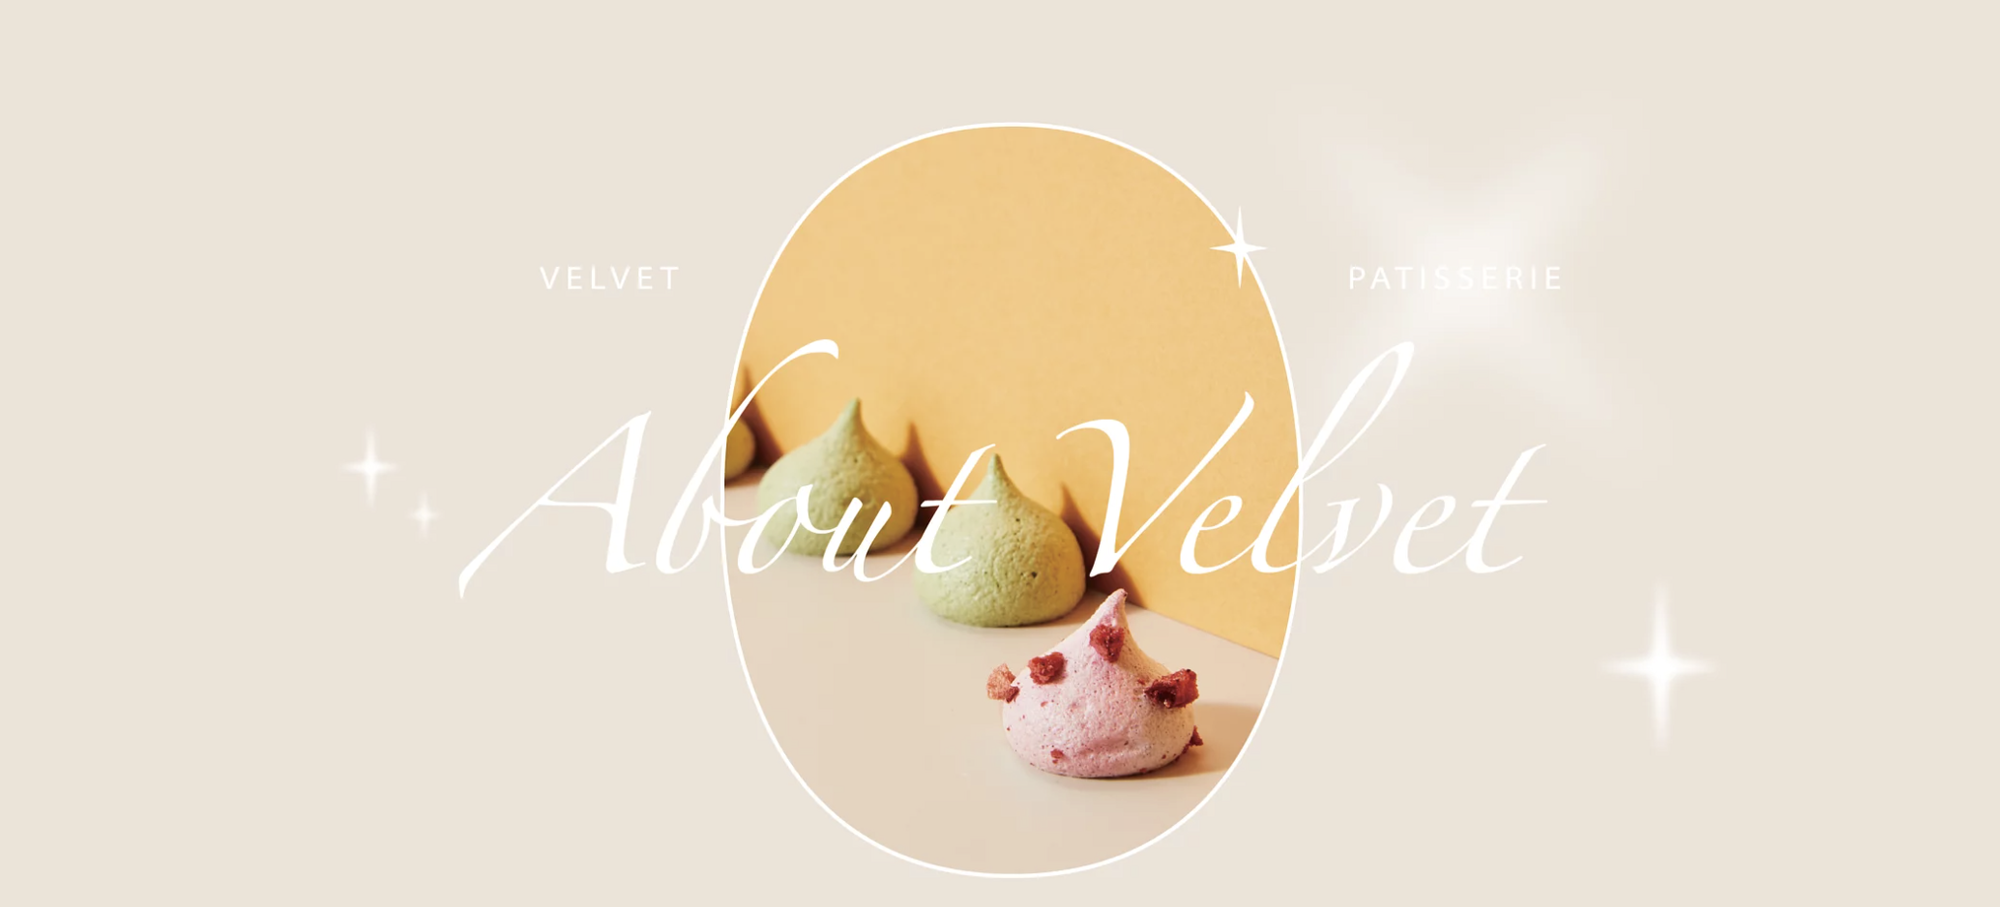 Velvet Patisserie 法絨法式手工甜點 - ECviu 電商評論網站